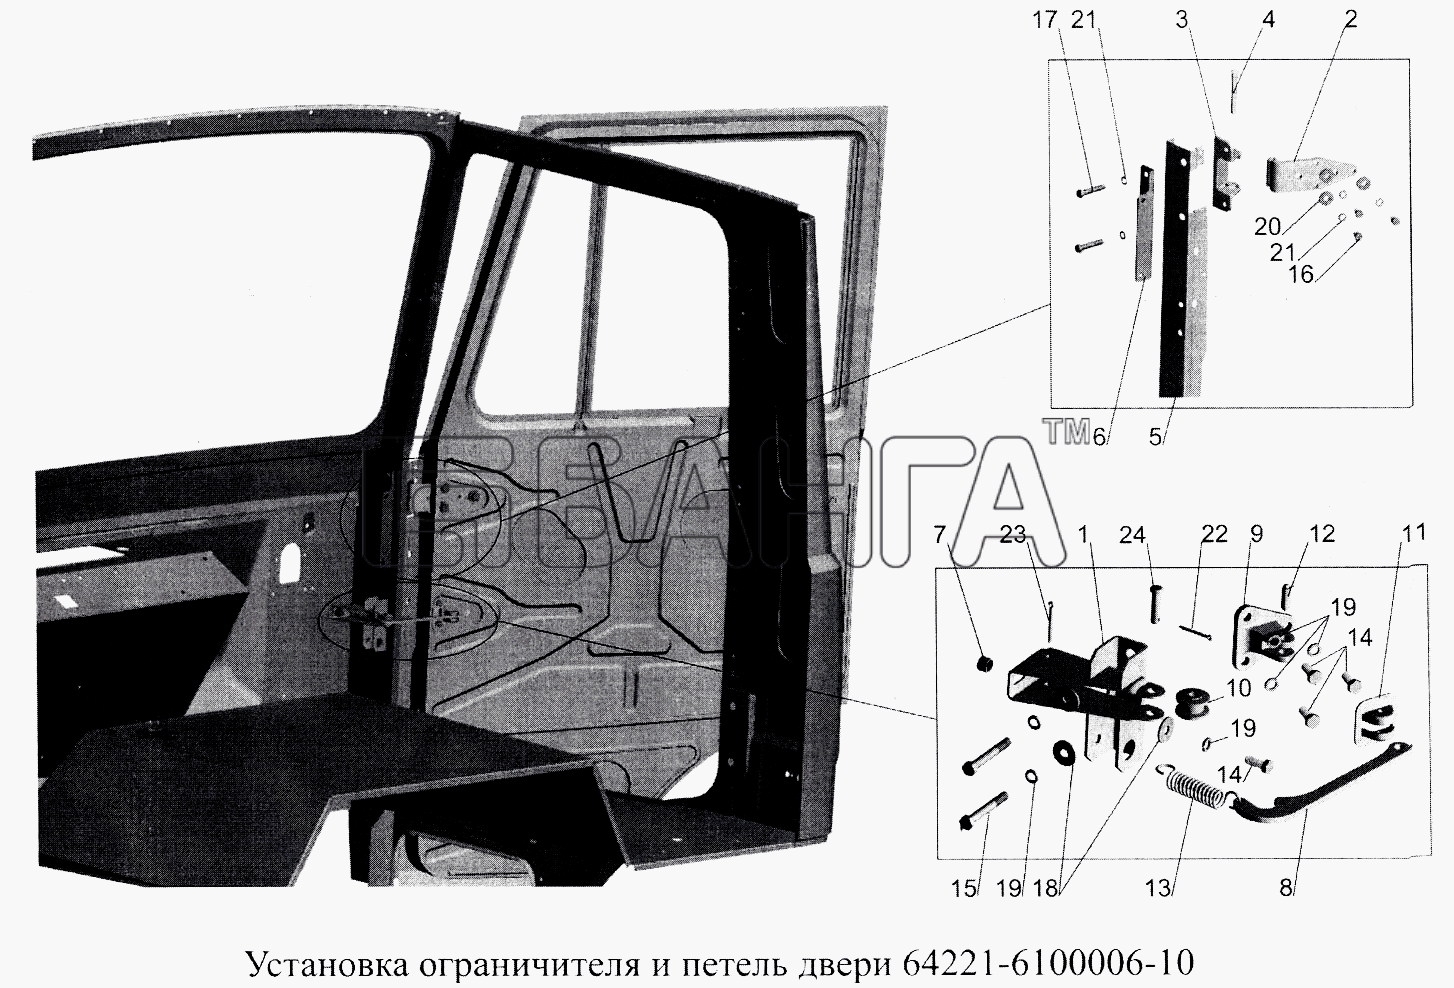 МАЗ МАЗ-5516А5 Схема Установка ограничителя и петель двери banga.ua